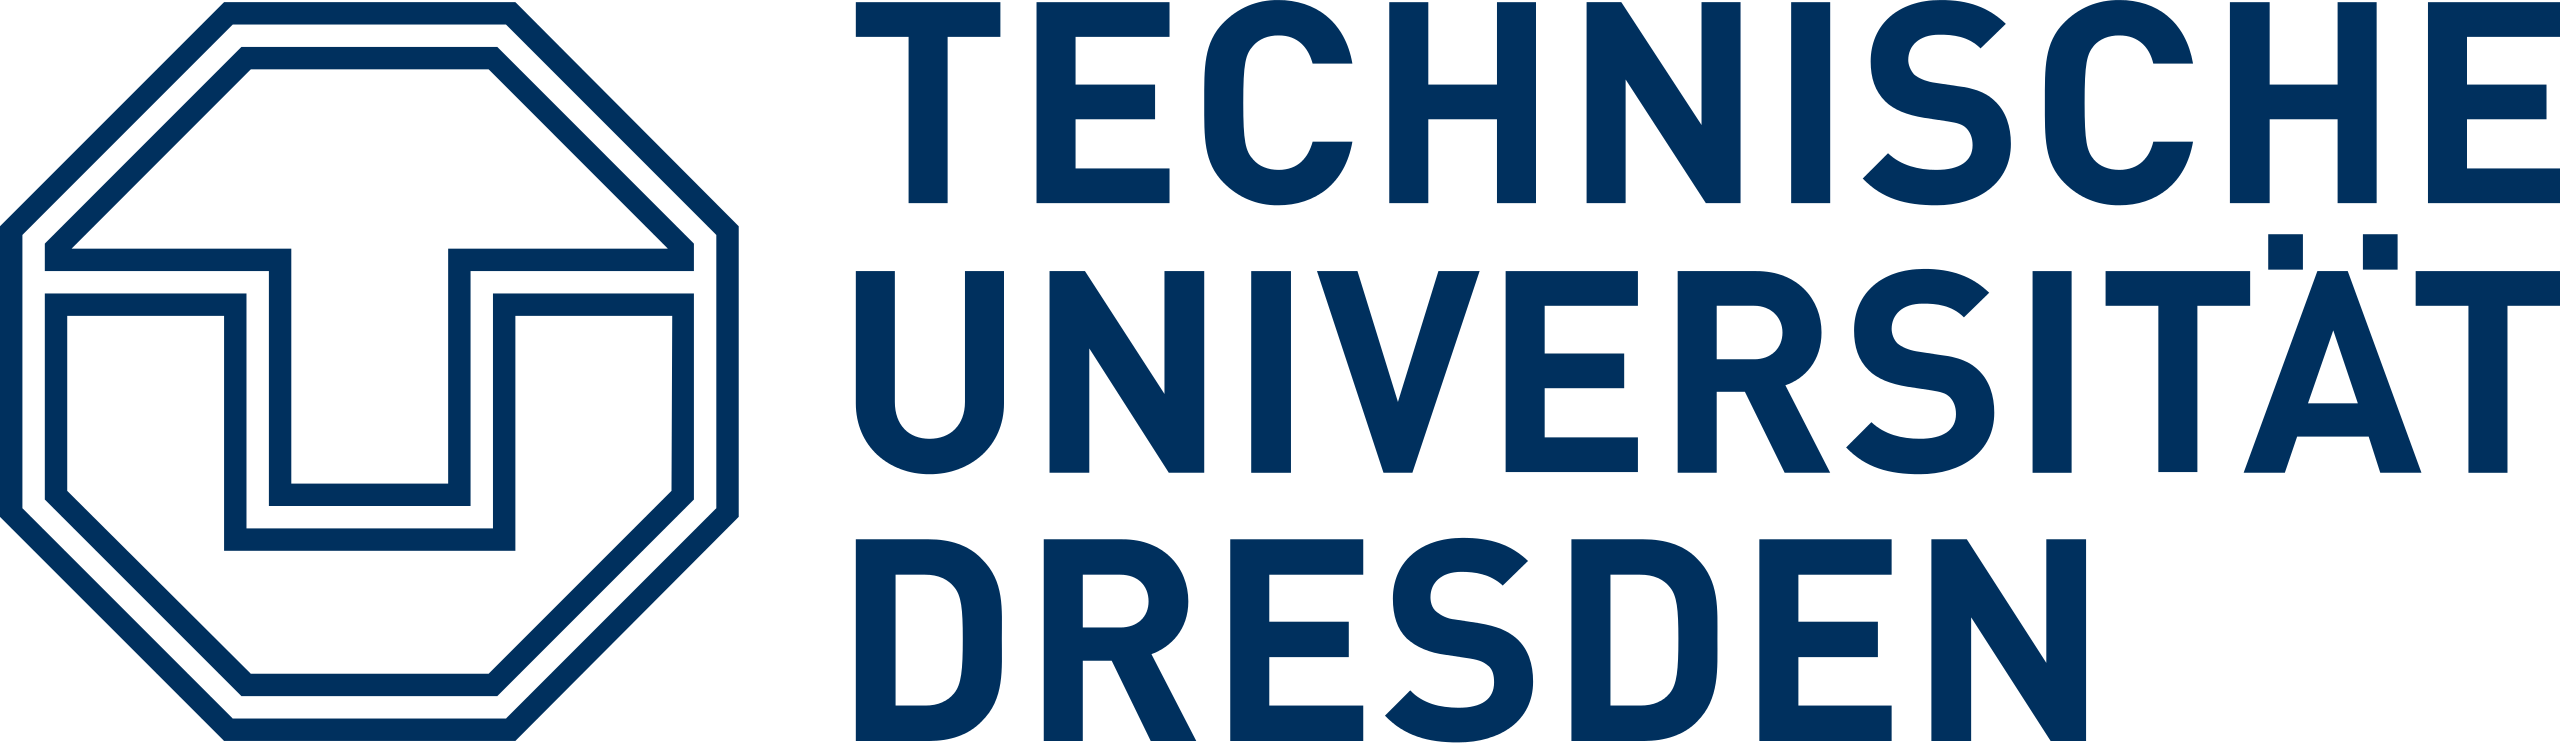 Delta Lektorat Logo der Technischen Universität Dresden